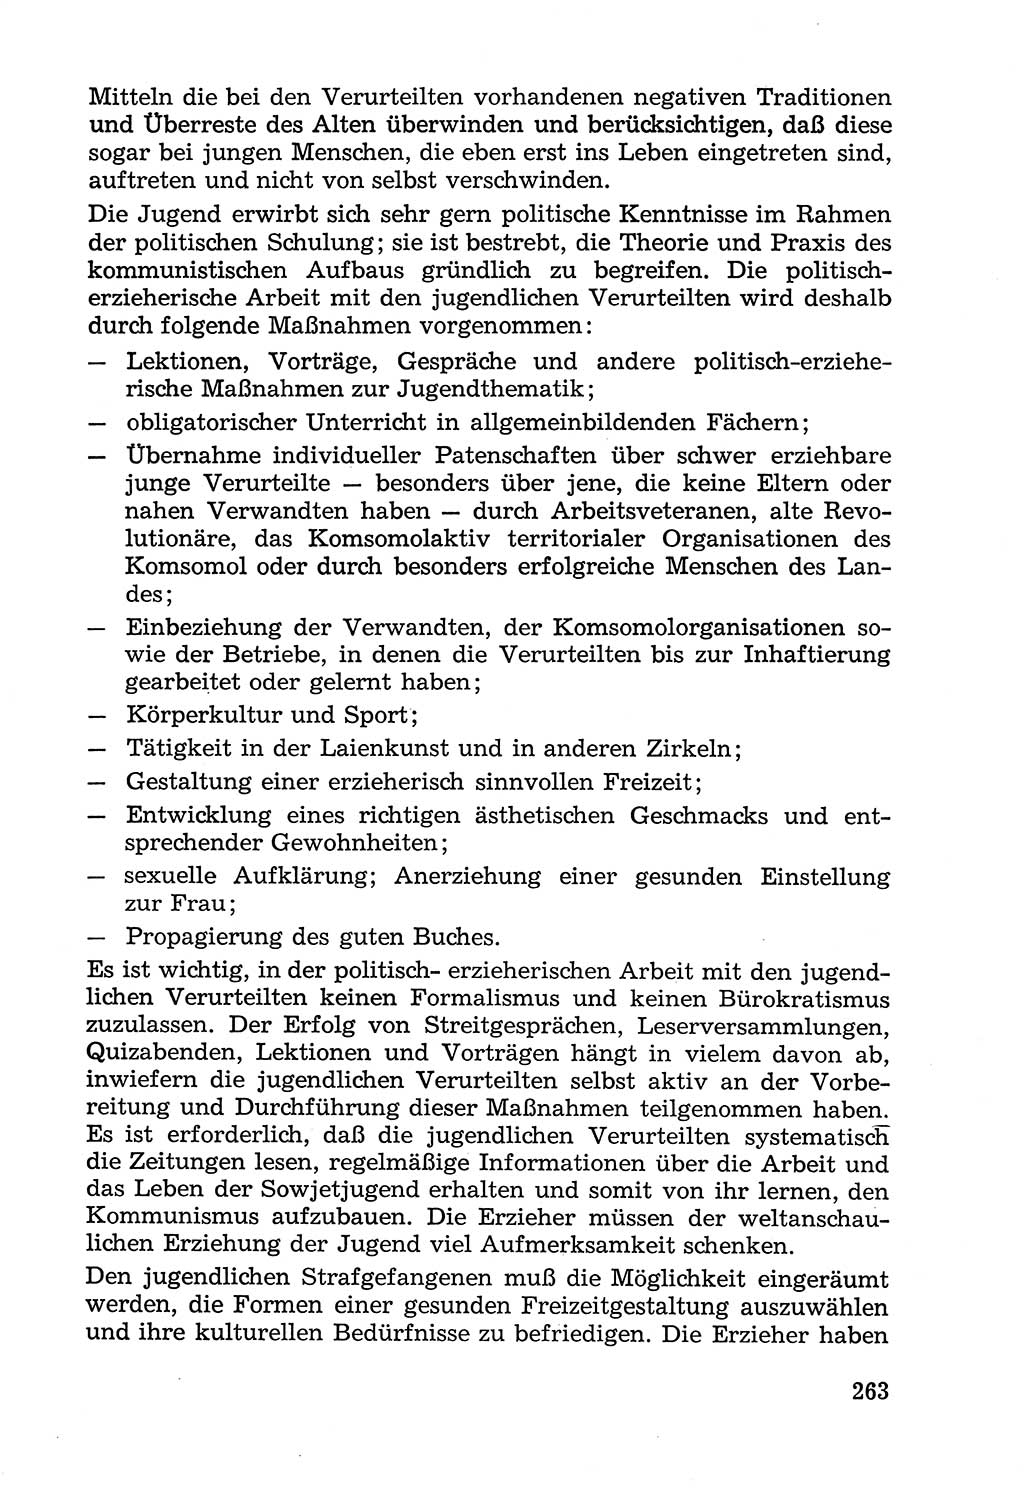 Lehrbuch der Strafvollzugspädagogik [Deutsche Demokratische Republik (DDR)] 1969, Seite 263 (Lb. SV-Pd. DDR 1969, S. 263)